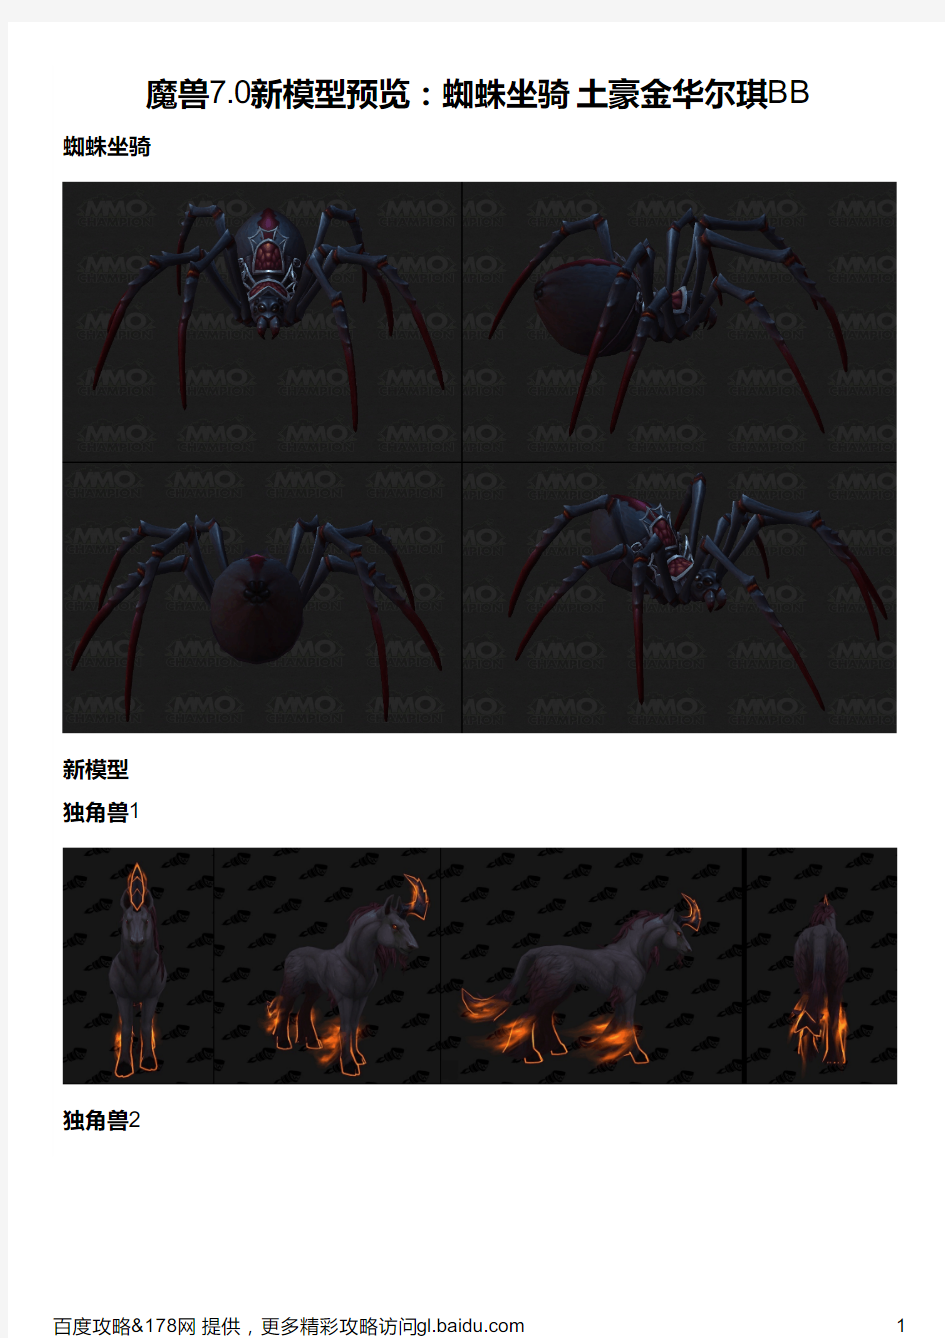 魔兽7 0新模型预览：蜘蛛坐骑 土豪金华尔琪BB